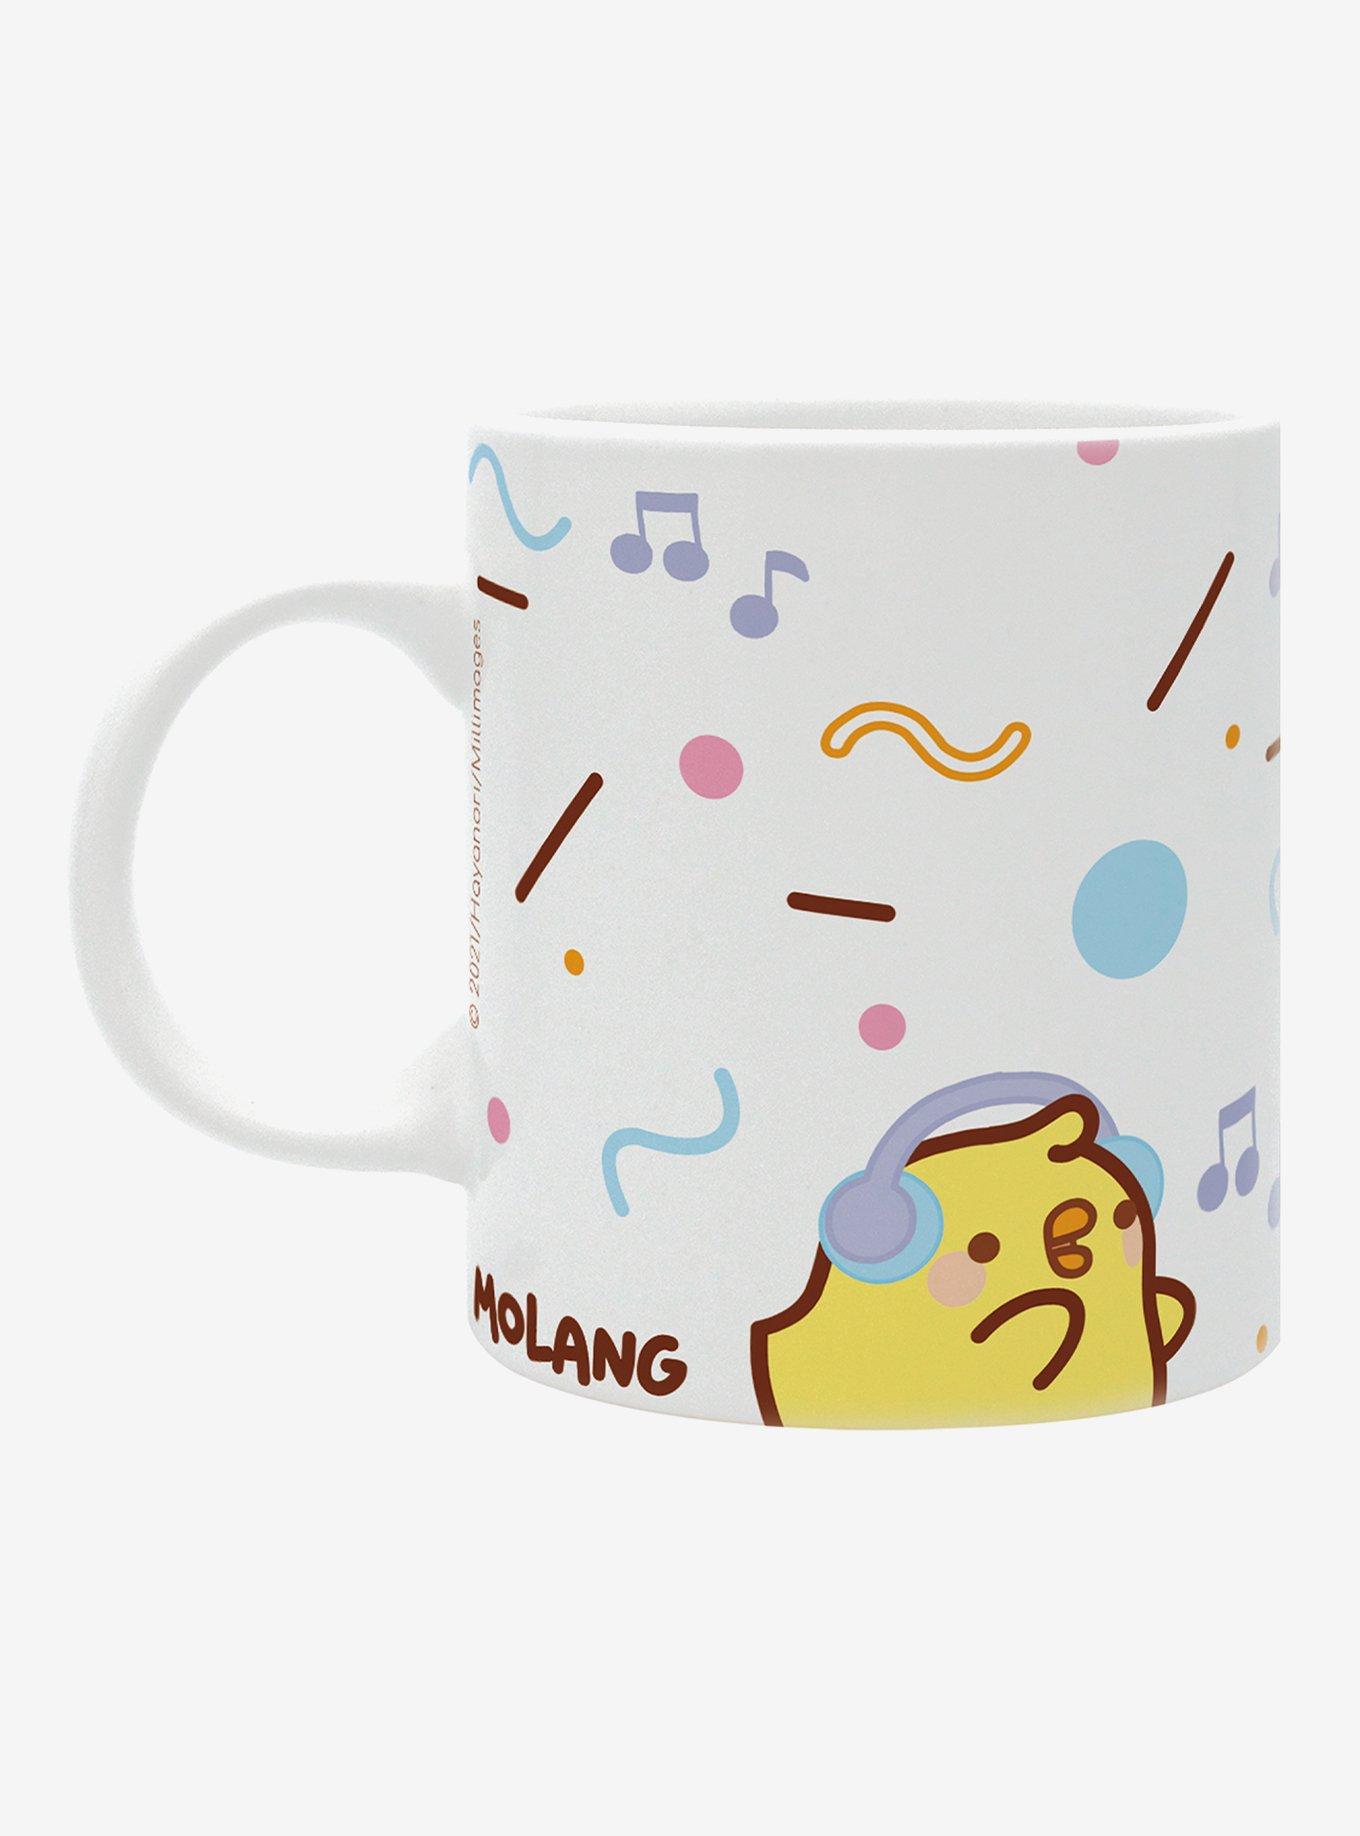 Molang Gift Box Mug Features Molang And Piu Piu, , alternate